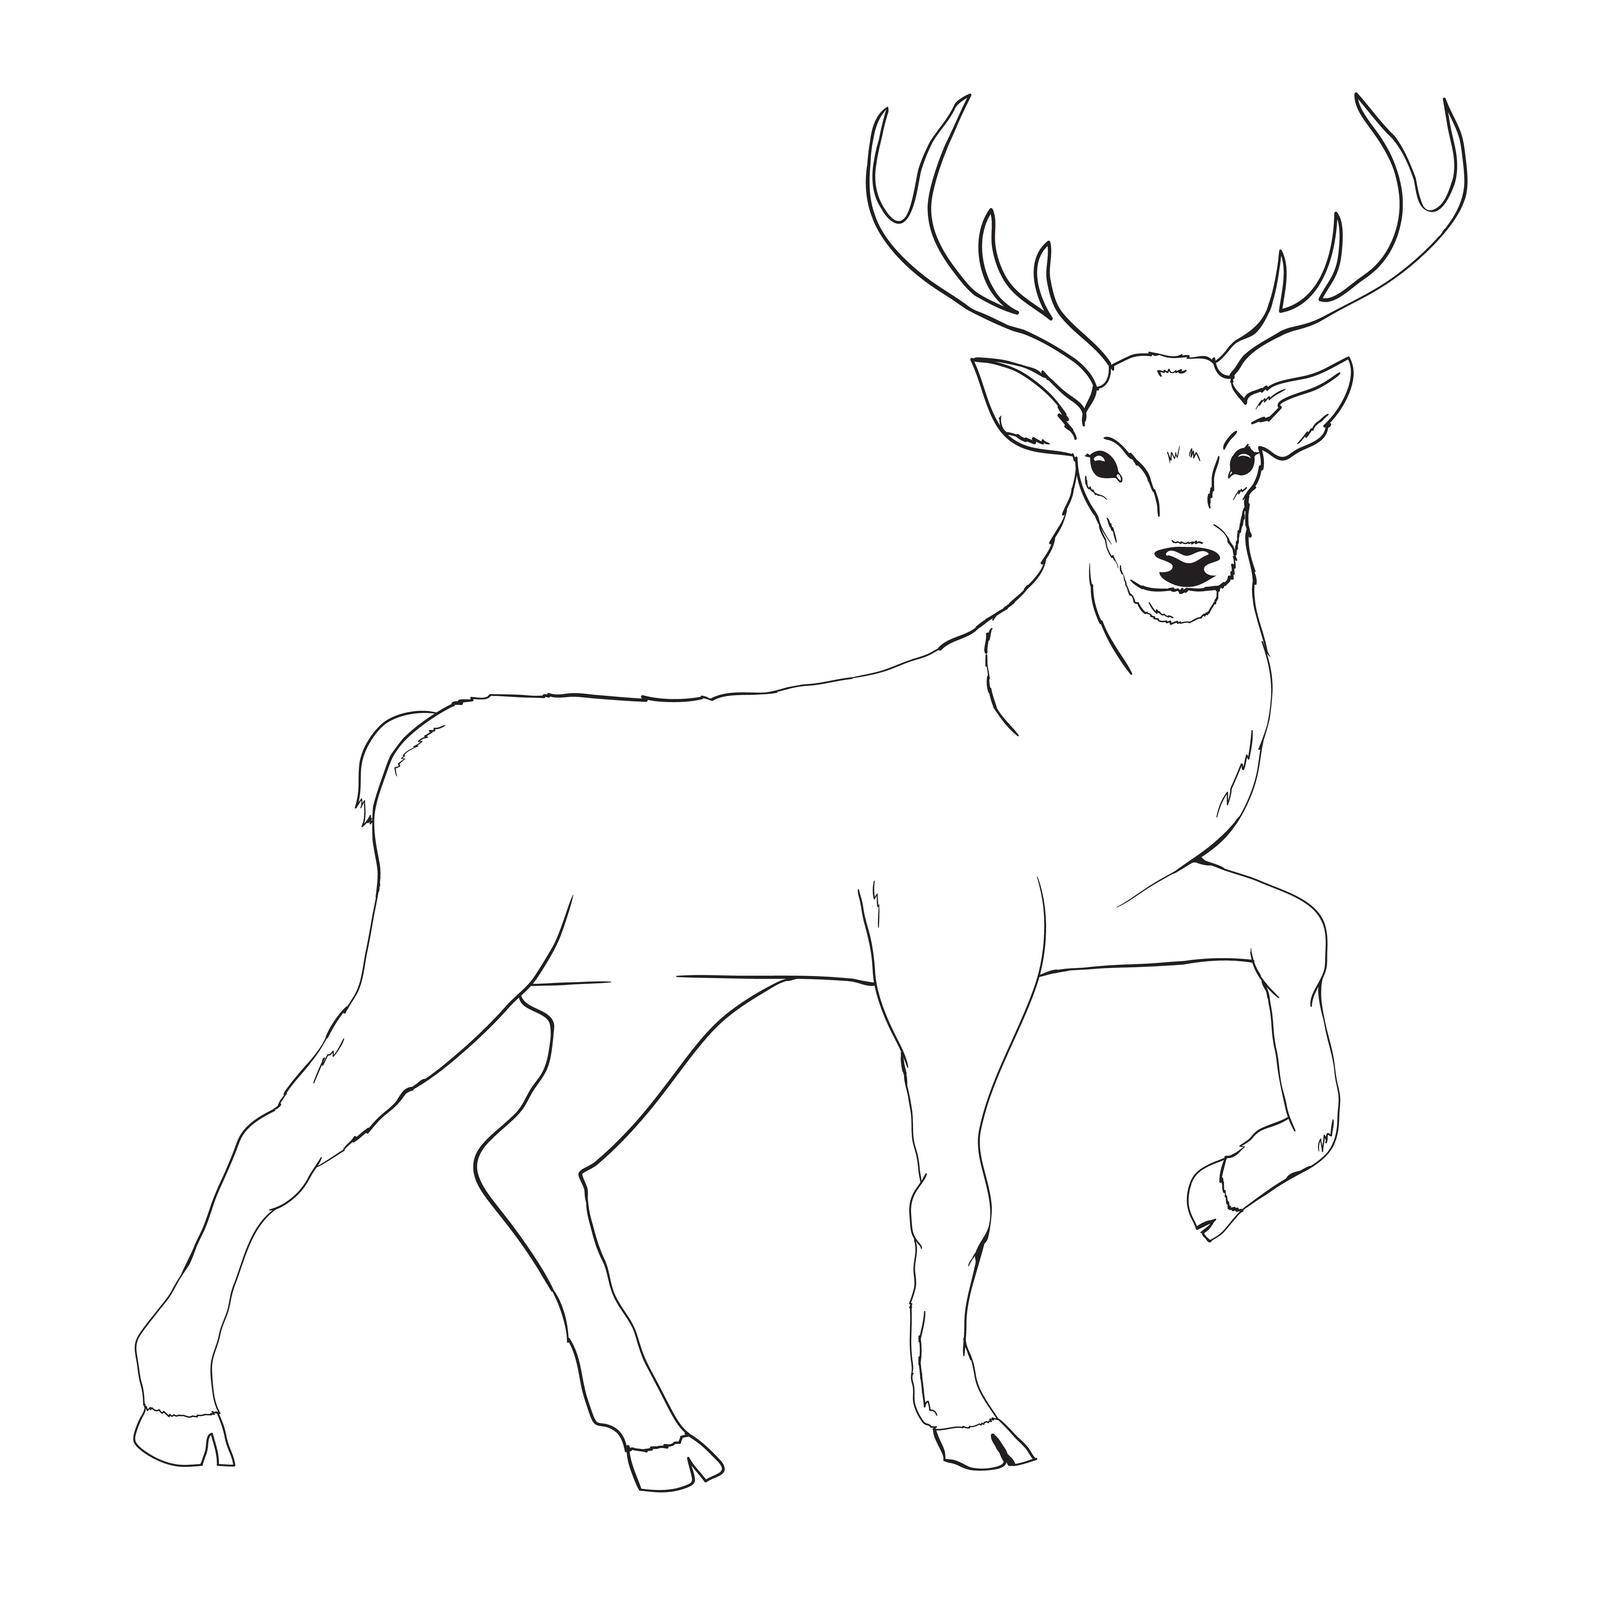 Deer drawing by Vladimir90